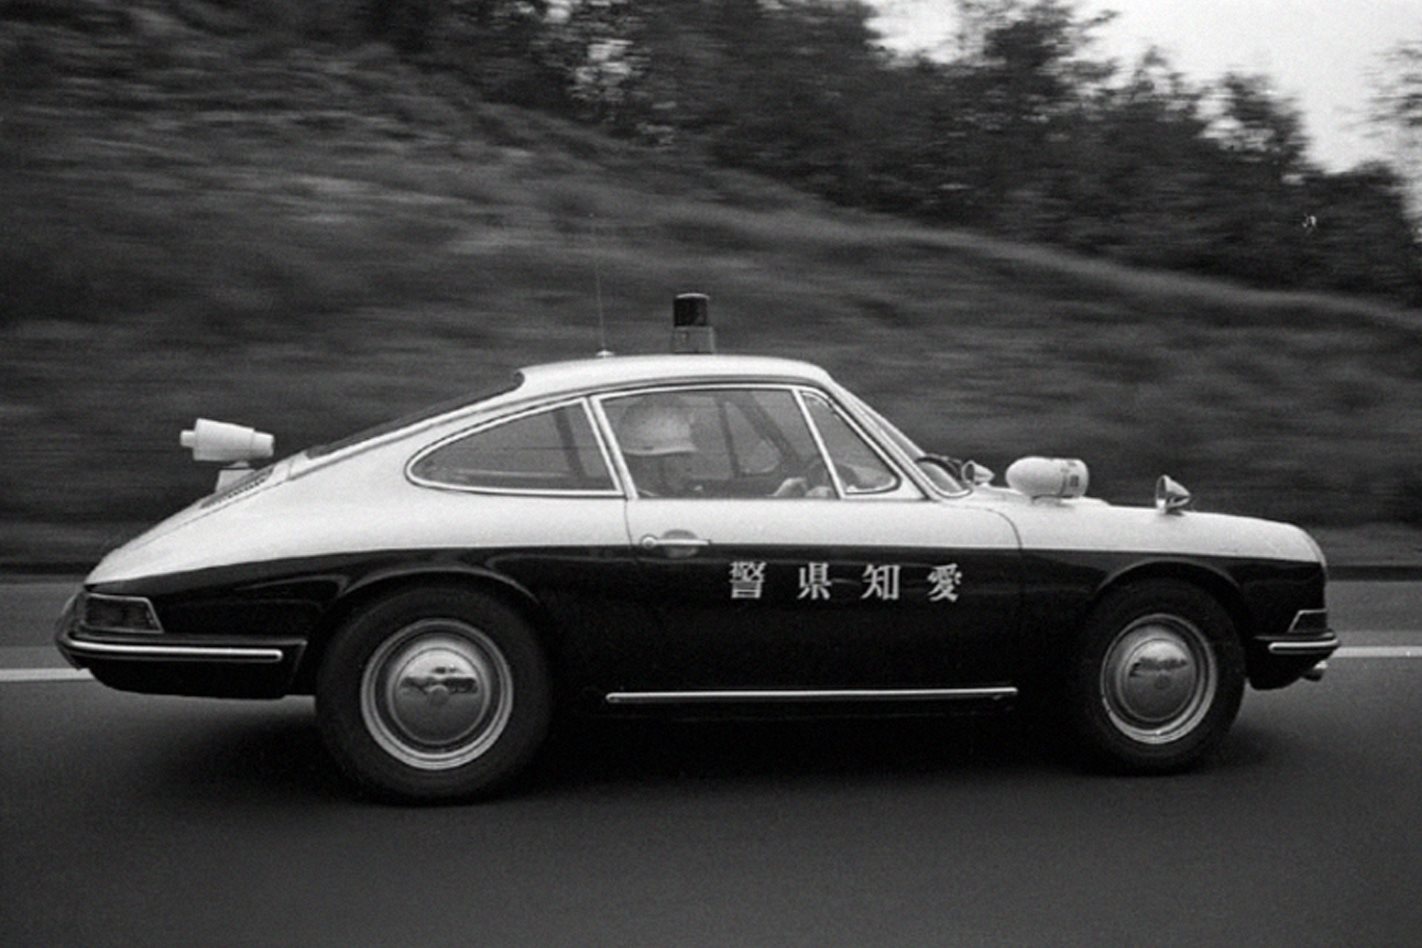 The Japanese police, Porsche 912.